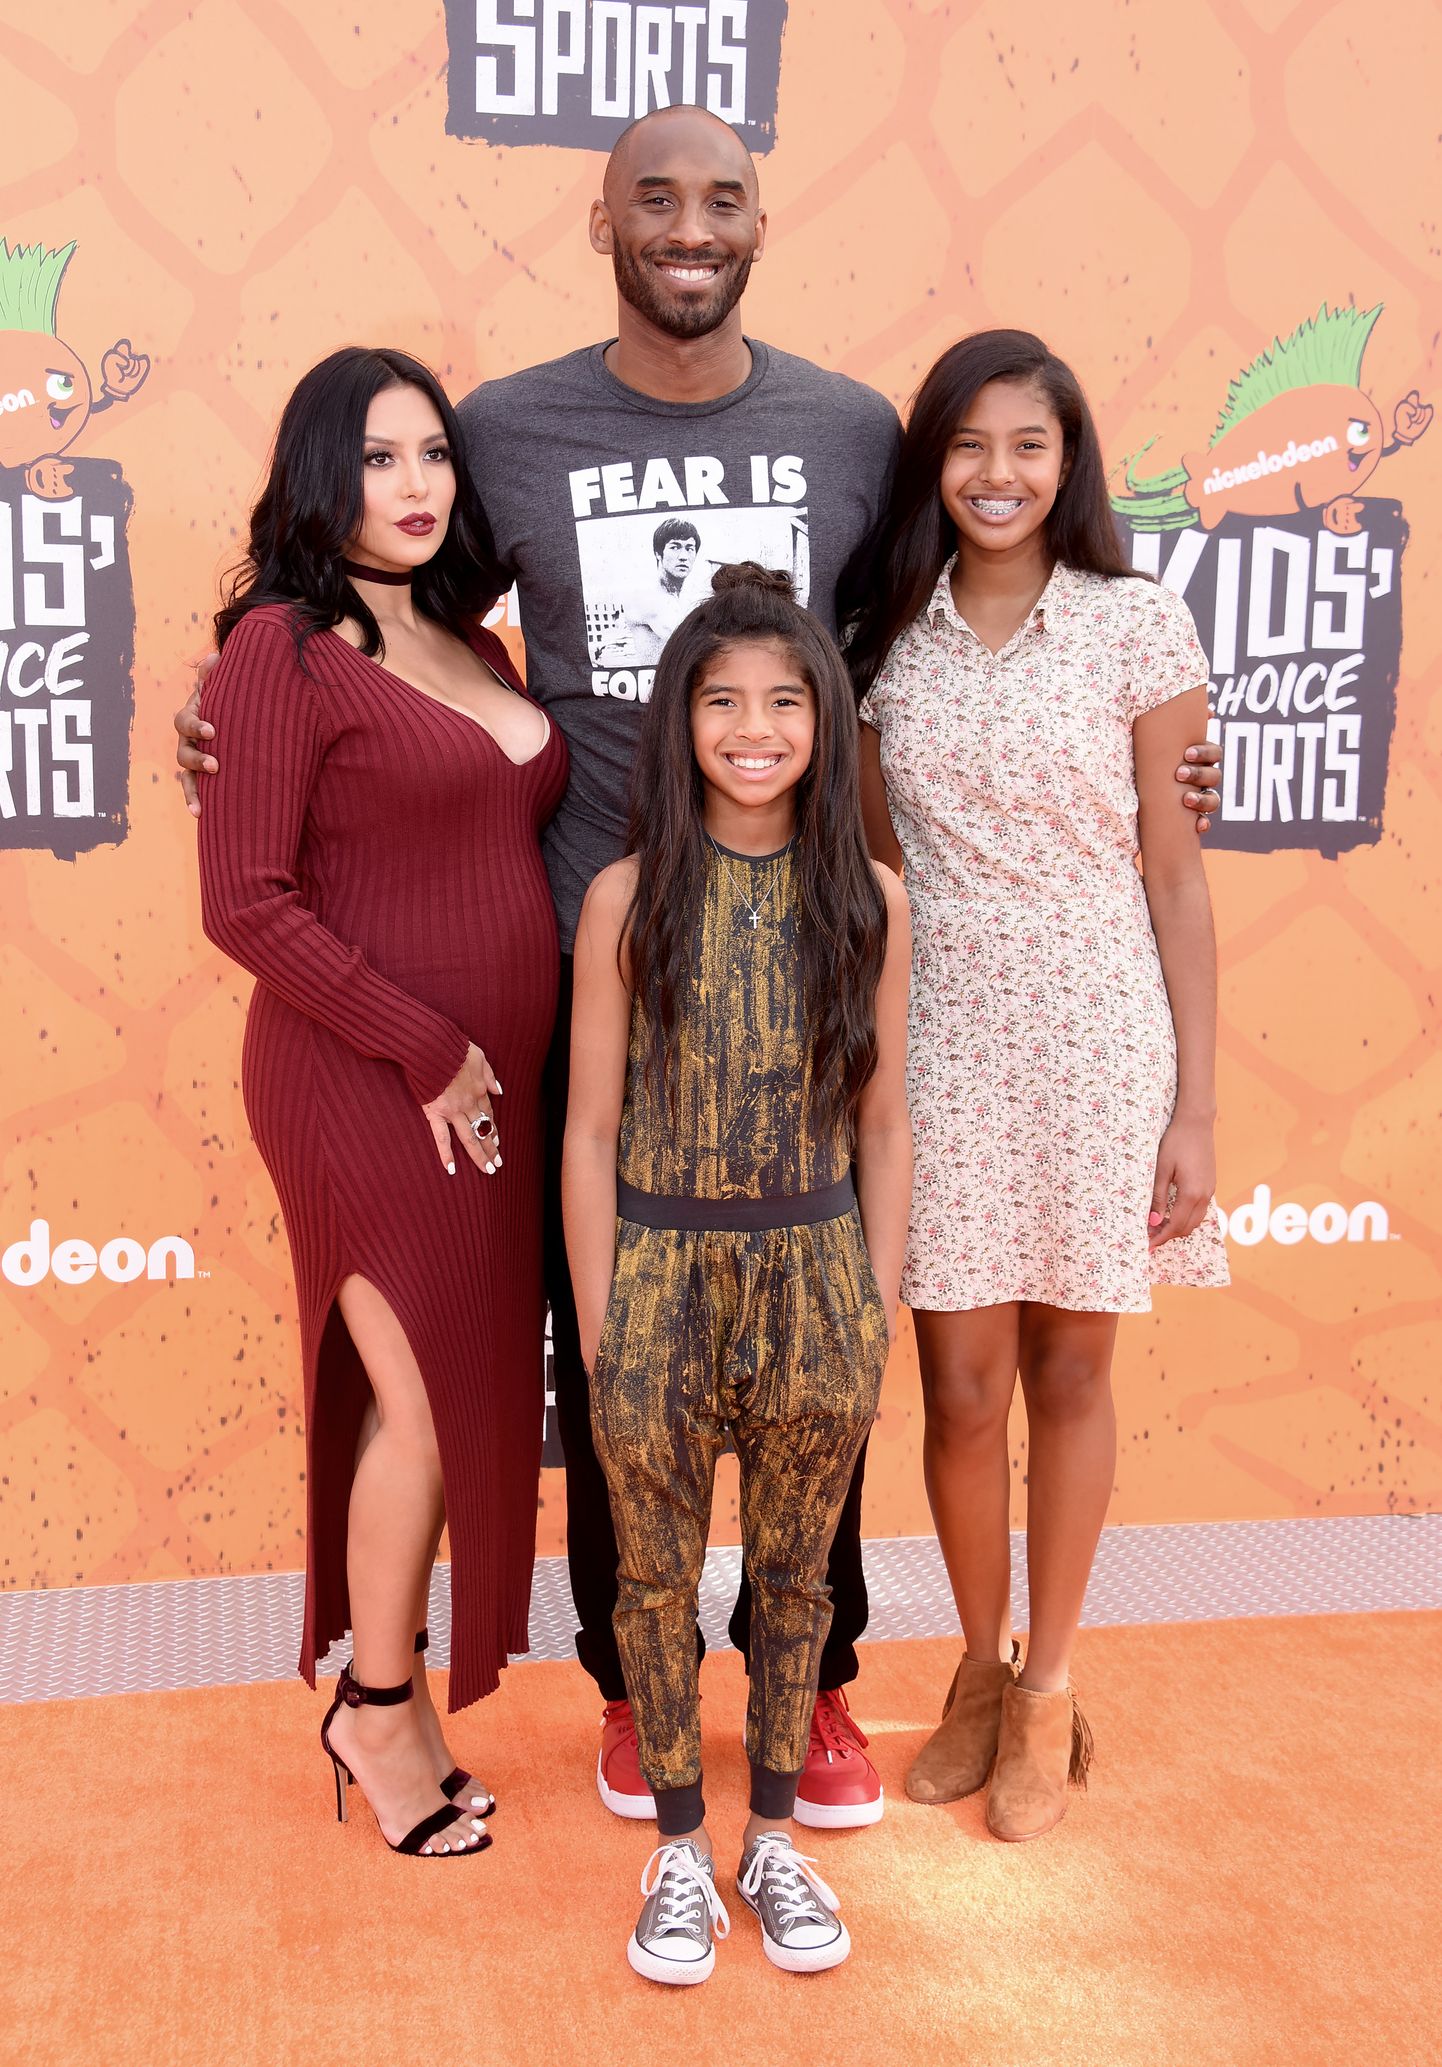 Kobe Bryant, abikaasa Vanessa Bryanti ning tütred Gianna ja Natalia (paremal) 2016. aastal. Kobe ja Gianna surid 26. jaanuaril 2020 helikopteriõnnetuses.